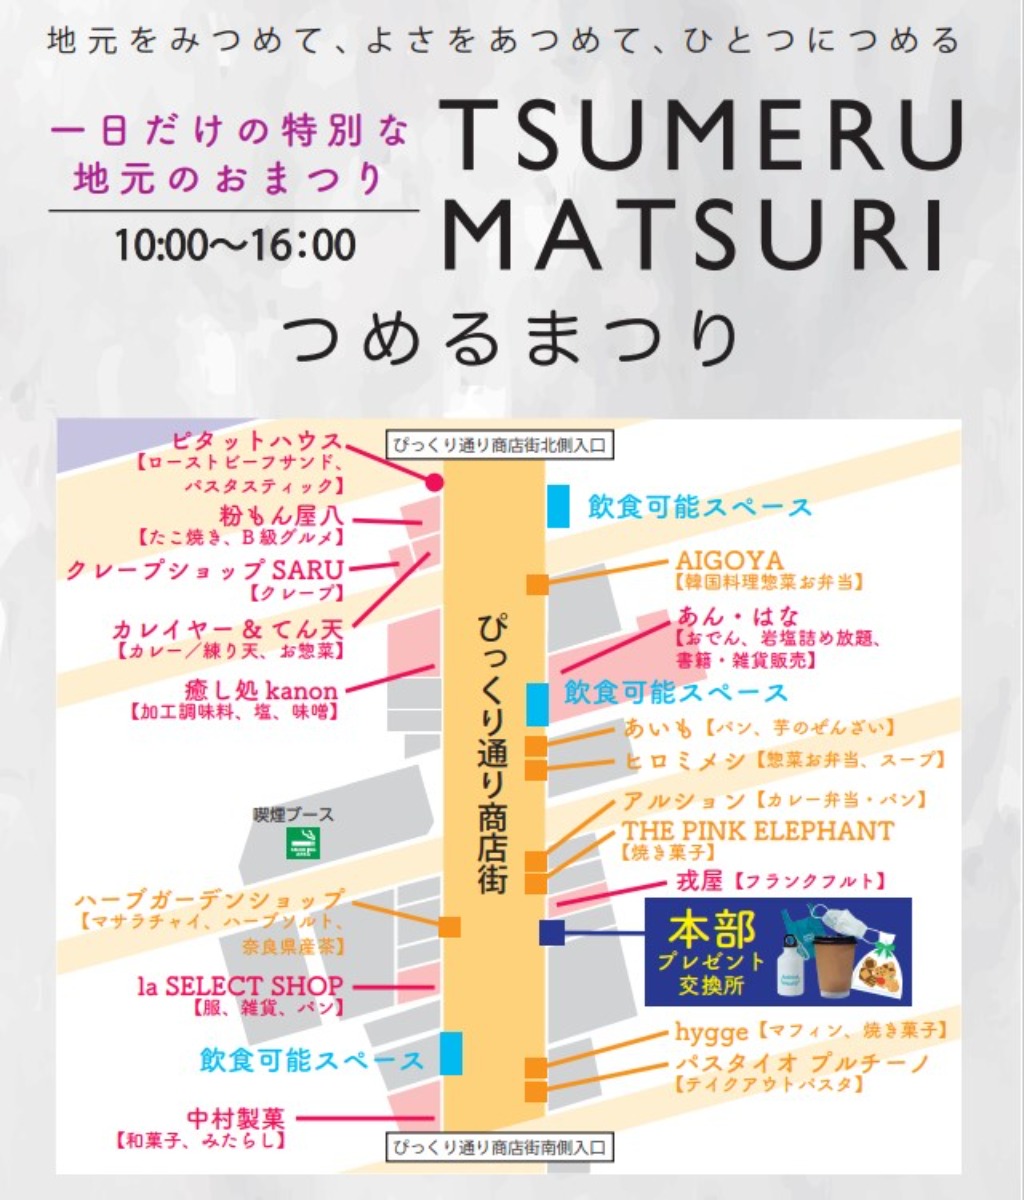 ※イベントは終了しました※12/18(日)「TSUMERU MATSURIつめるまつり  in ぴっくり通り商店街」開催！